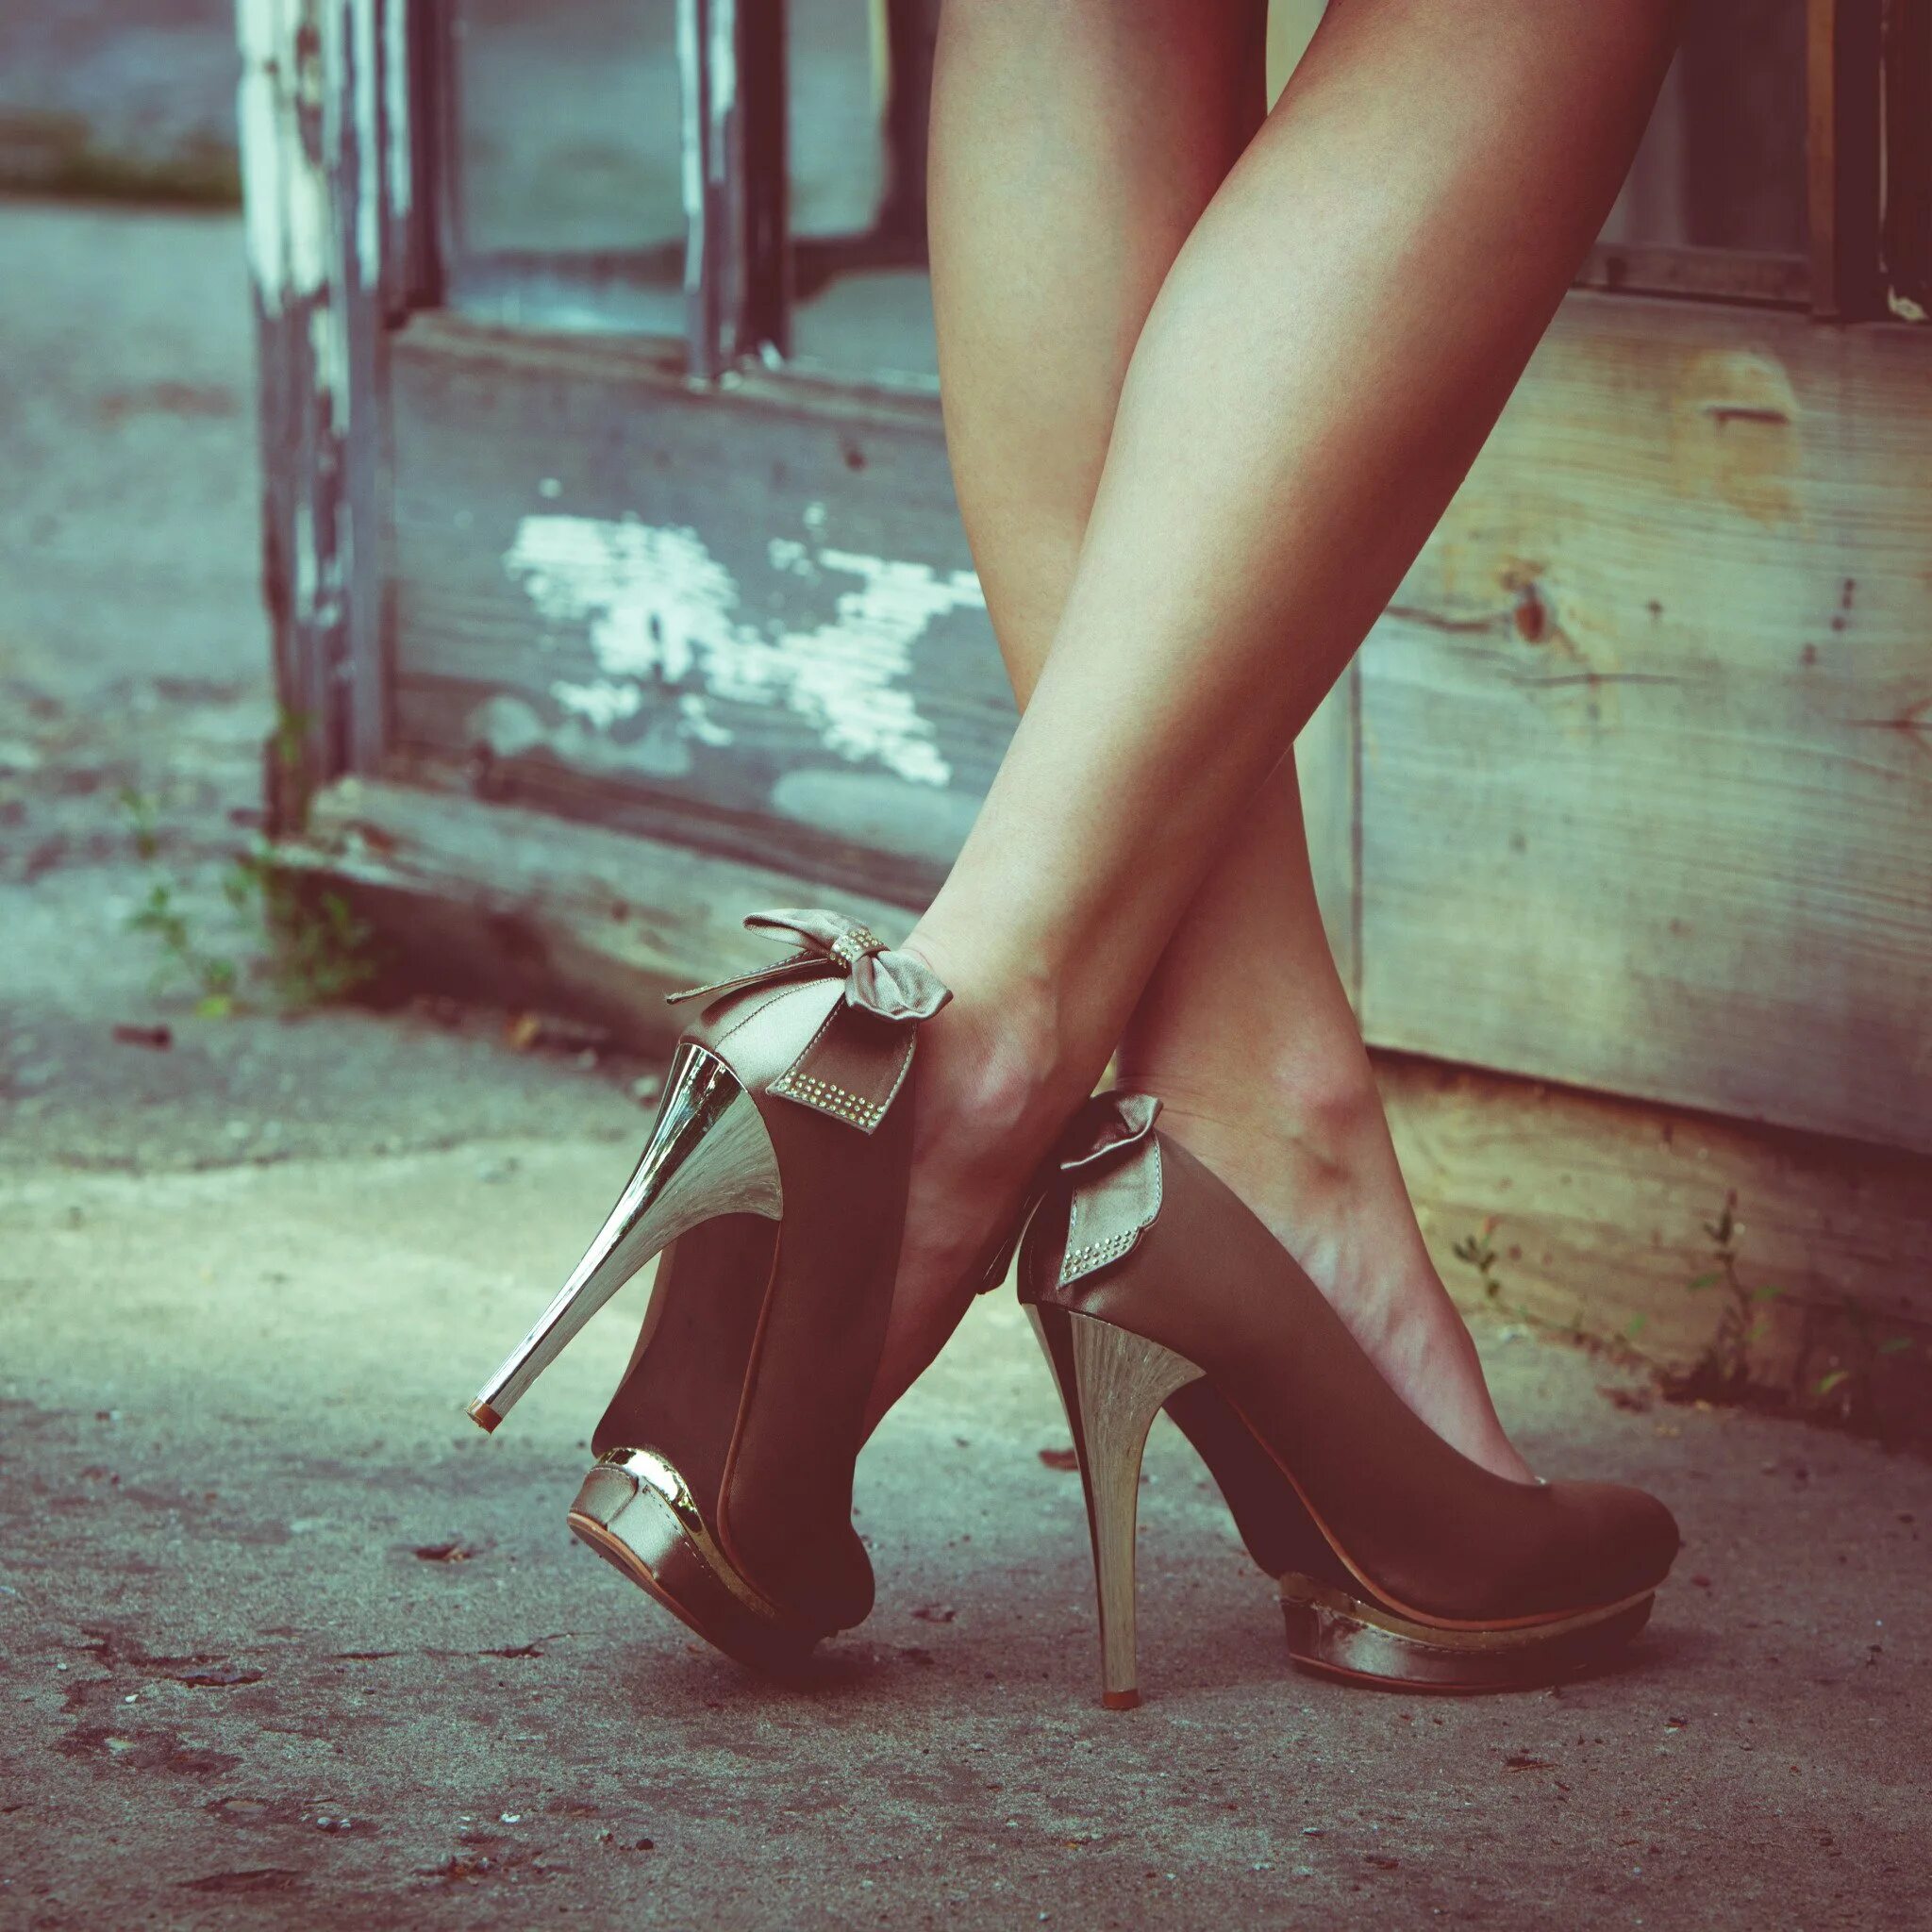 Красивые женские ноги. Девушка в туфлях. Красивые ноги в туфлях. Ножки в туфлях на шпильке. Ножки в чулках и туфлях